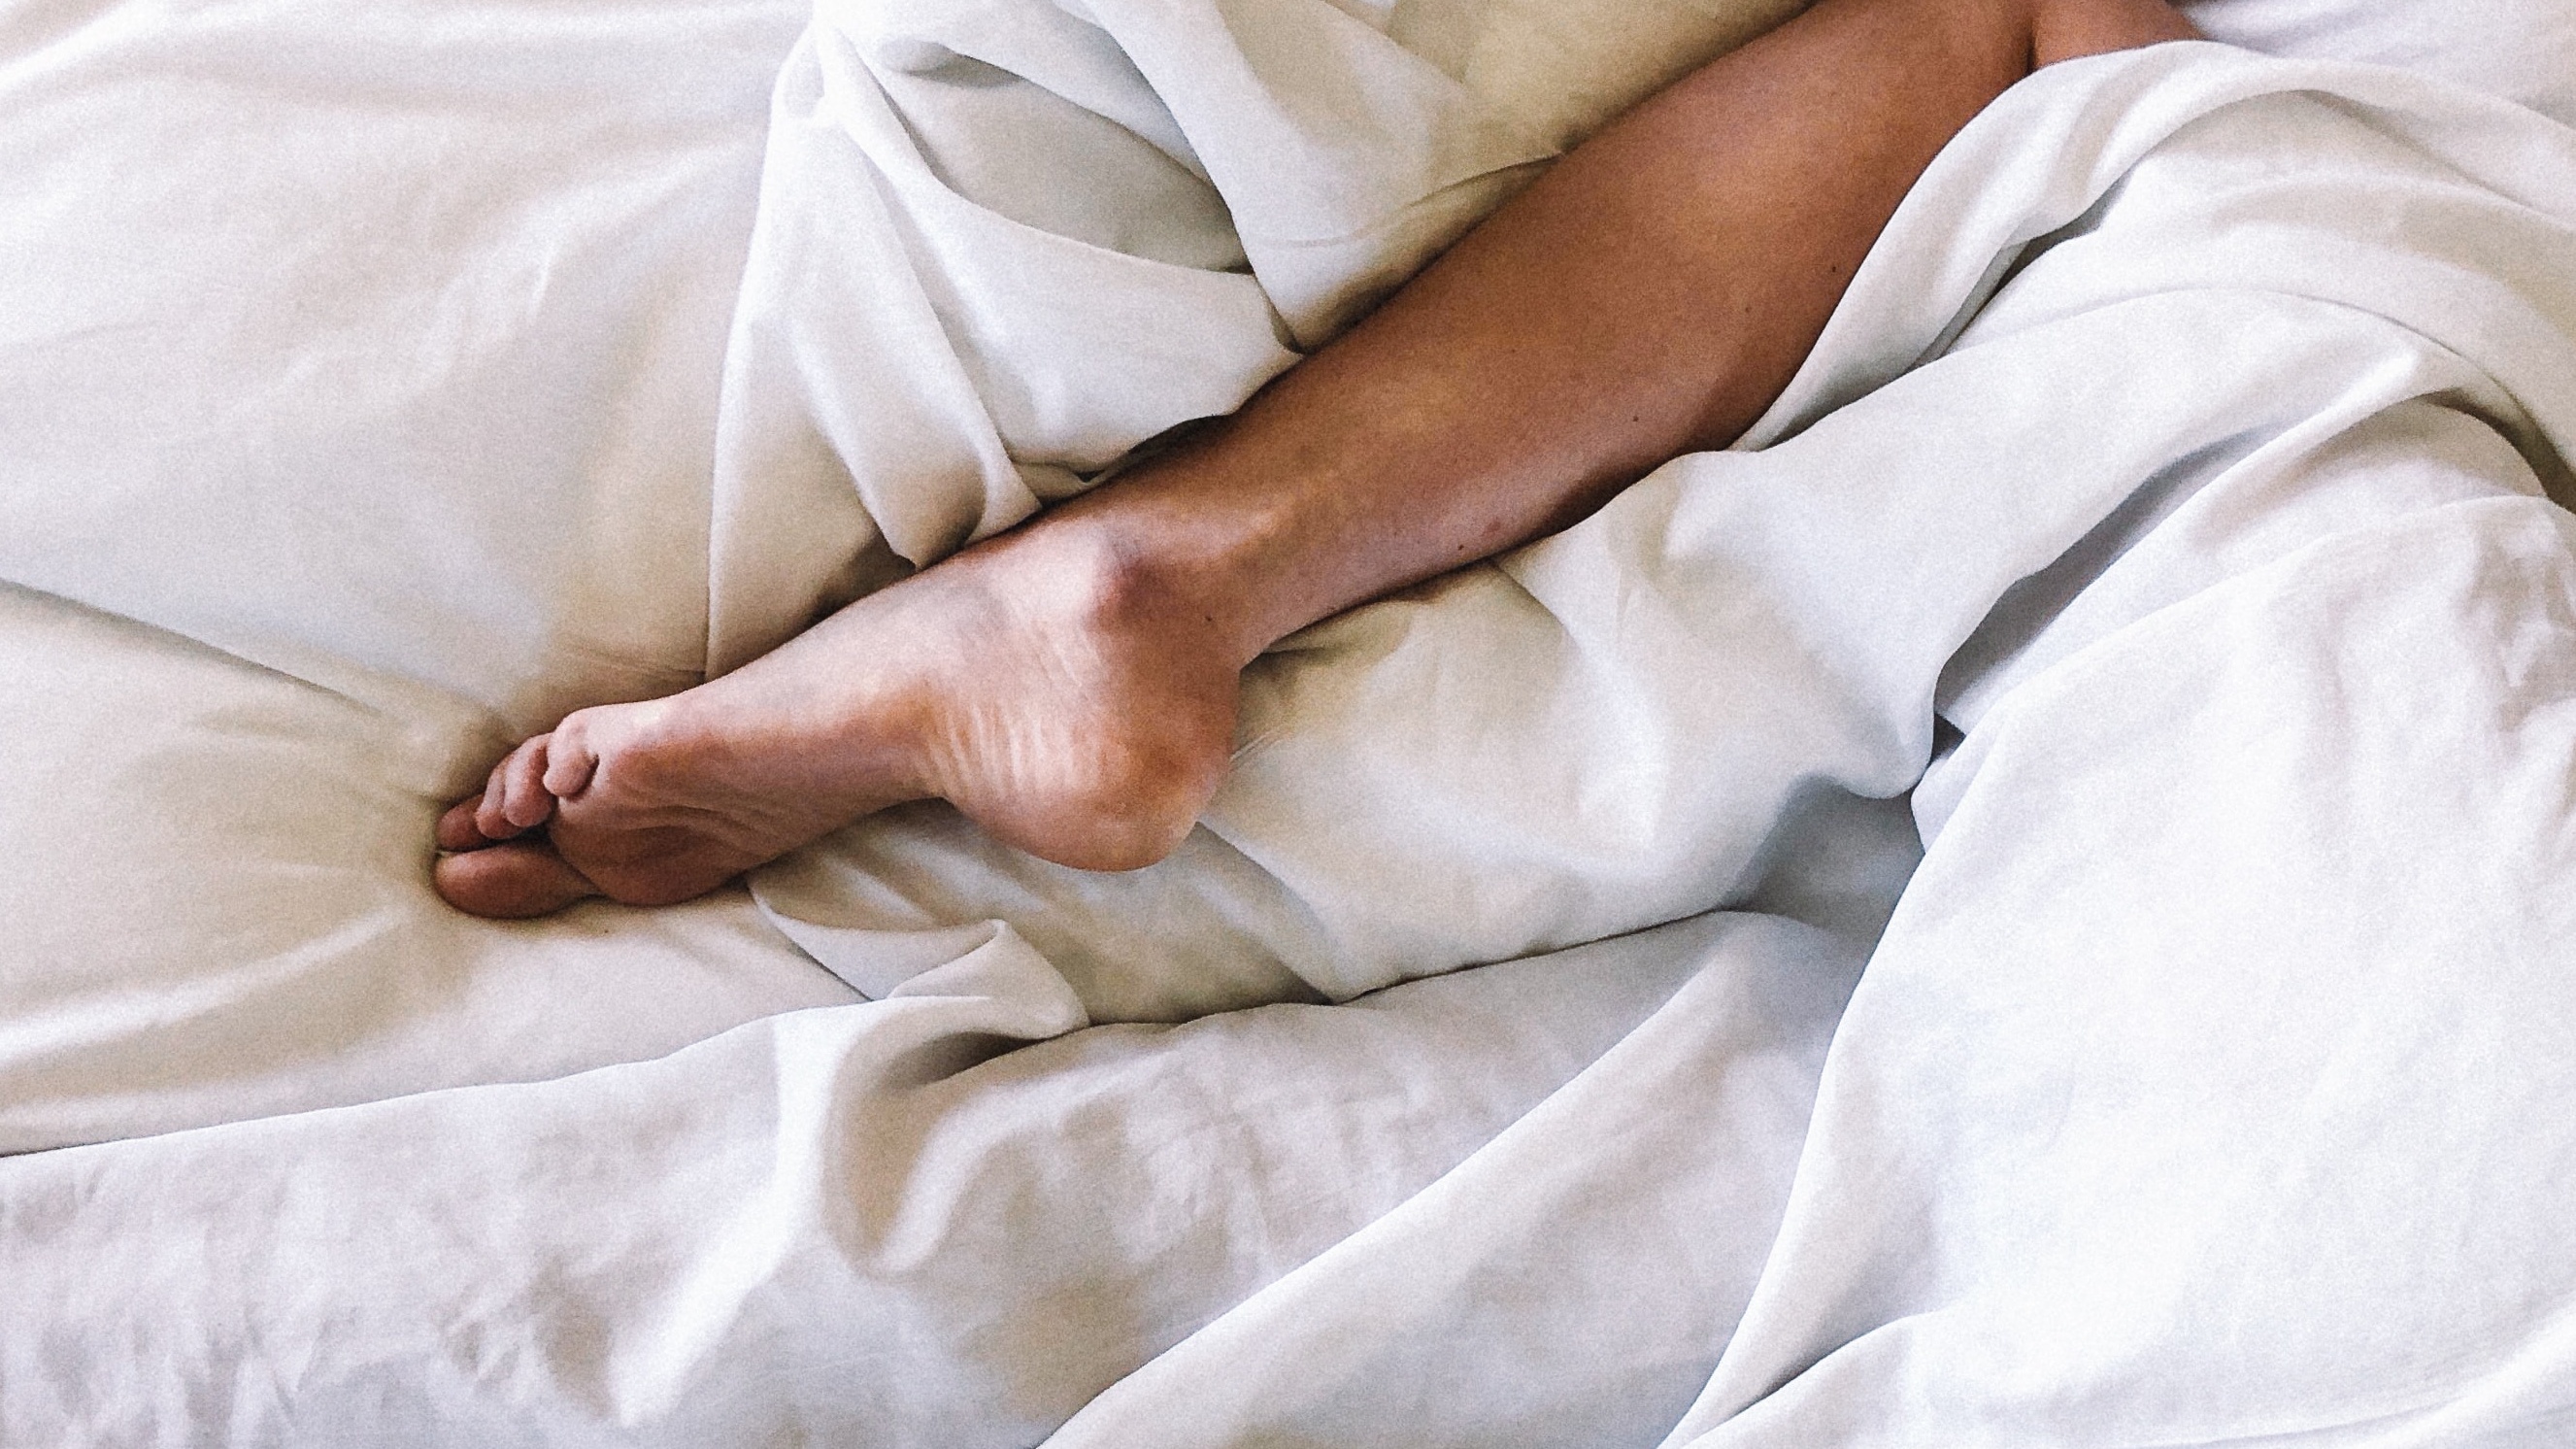 Catena diep metgezel Koude voeten in bed: zó krijg je ze lekker warm - Holistik